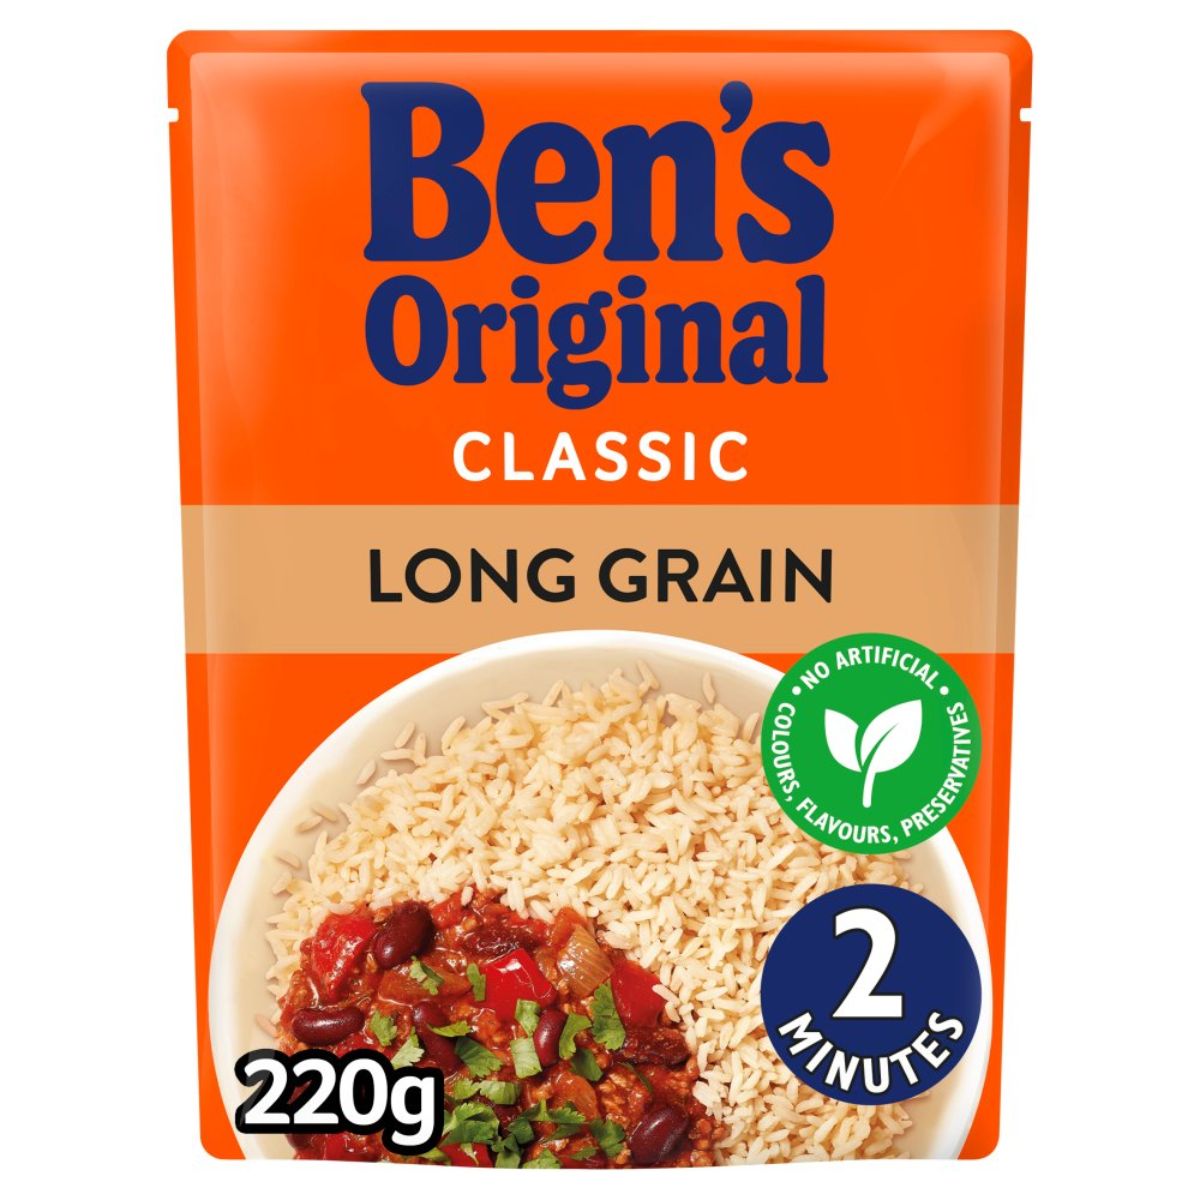 Bens Original - Long Grain Microwave Rice - 220g.